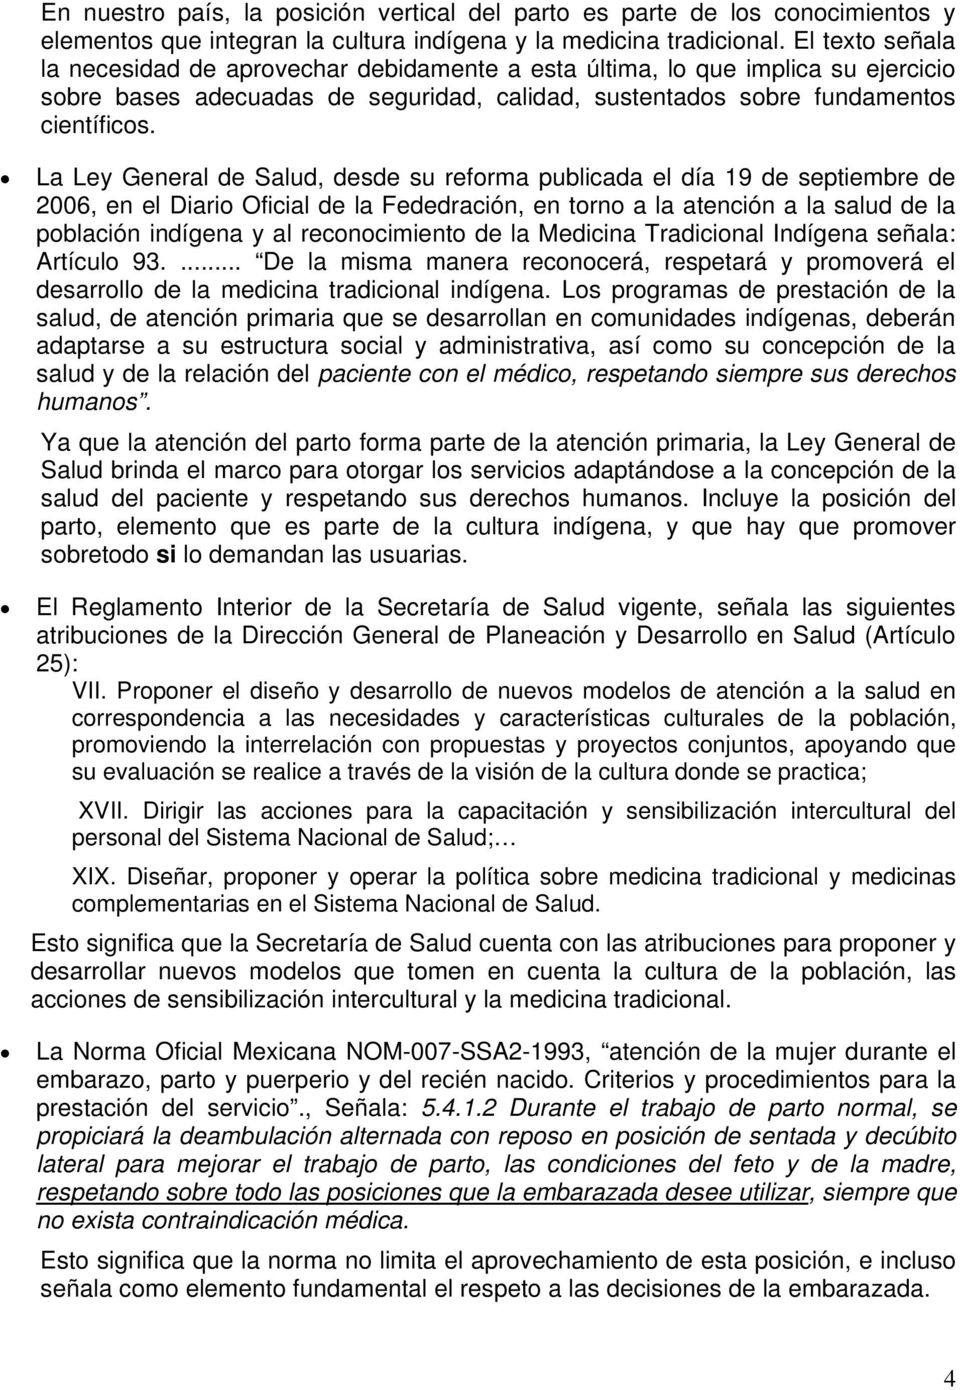 La Ley General de Salud, desde su reforma publicada el día 19 de septiembre de 2006, en el Diario Oficial de la Fededración, en torno a la atención a la salud de la población indígena y al